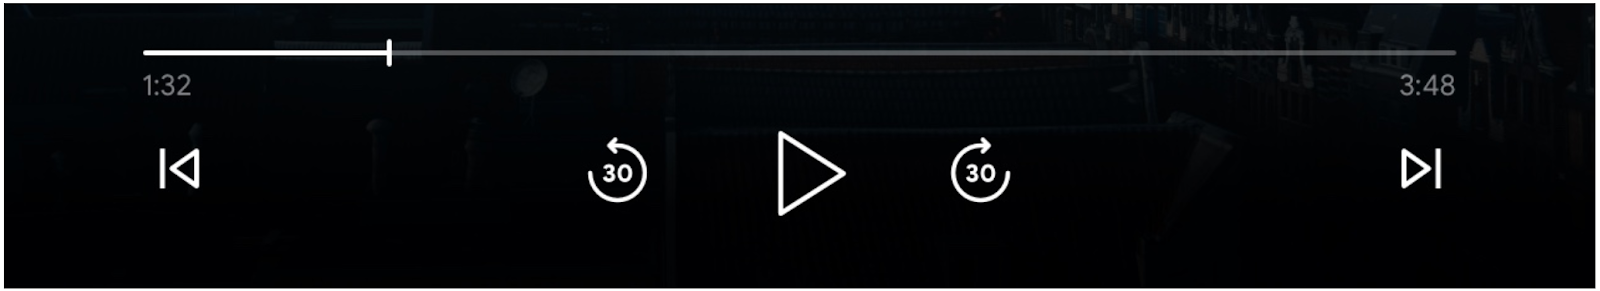 Obraz elementów sterujących odtwarzaczem: przycisk postępu, przycisk „Odtwórz”, „Przeskocz do przodu” i „Pomiń do tyłu” oraz przyciski „Poprzednia” i „Kolejka” są włączone